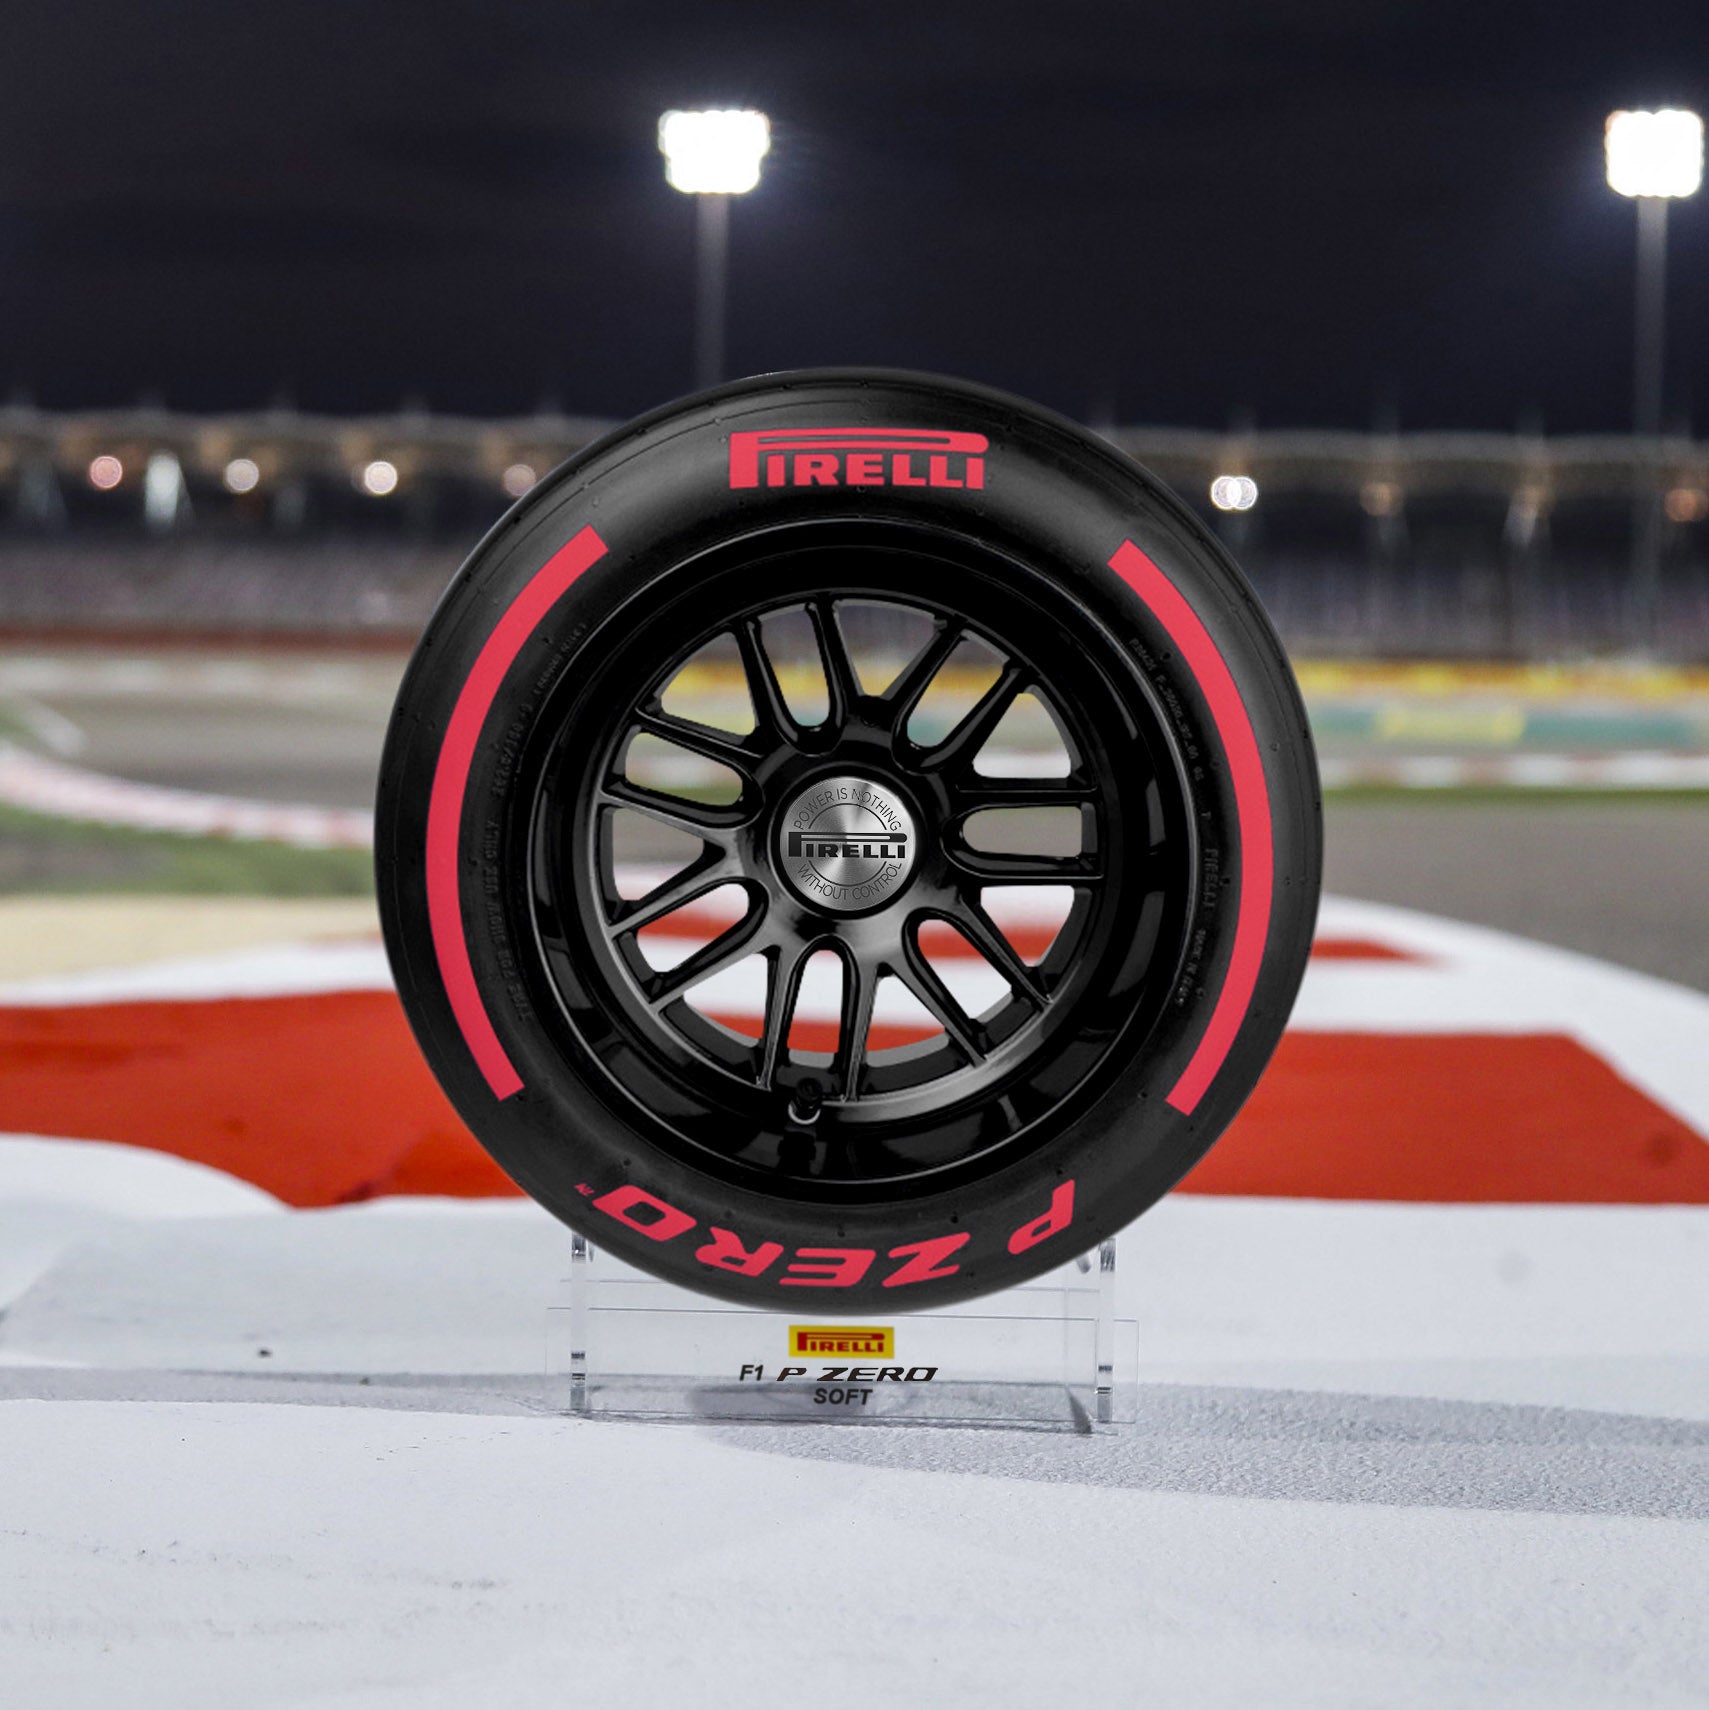 Pirelli Wind Tunnel Tyre 2023 - Red Soft Compound